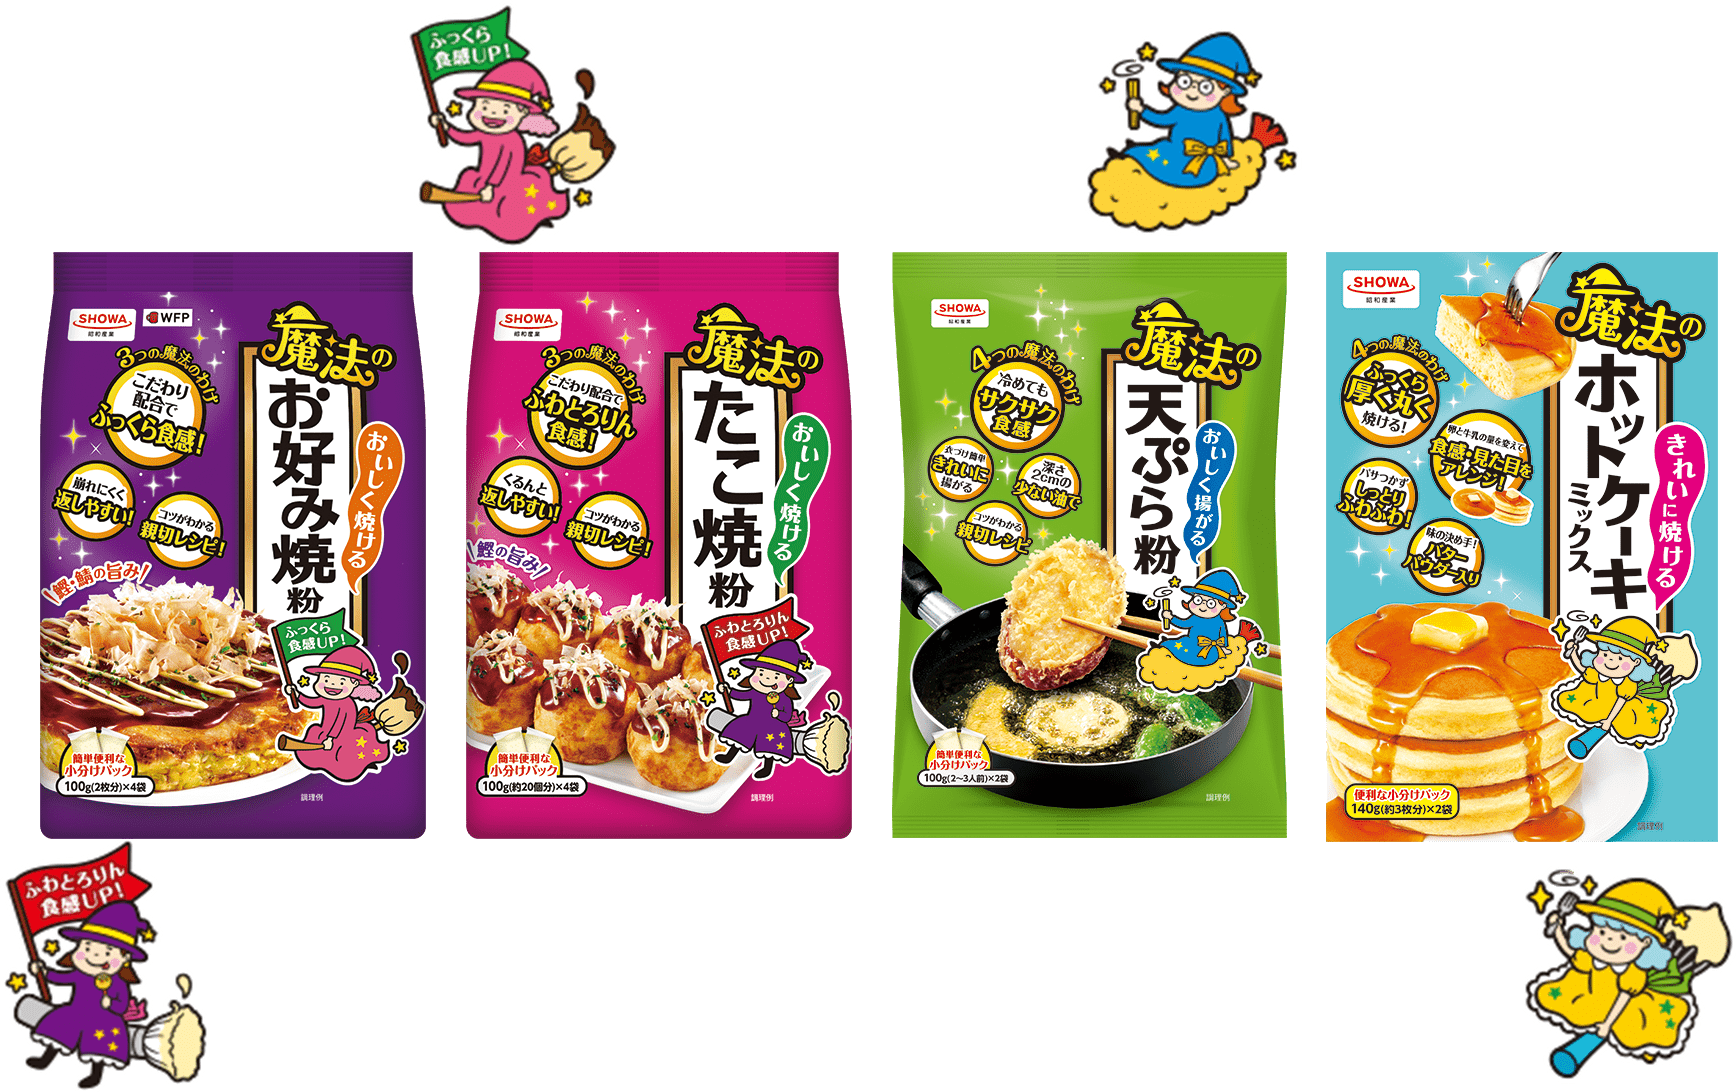 魔法のたこ焼粉、魔法のお好み焼粉、魔法の天ぷら粉、魔法のホットケーキミックスの商品画像